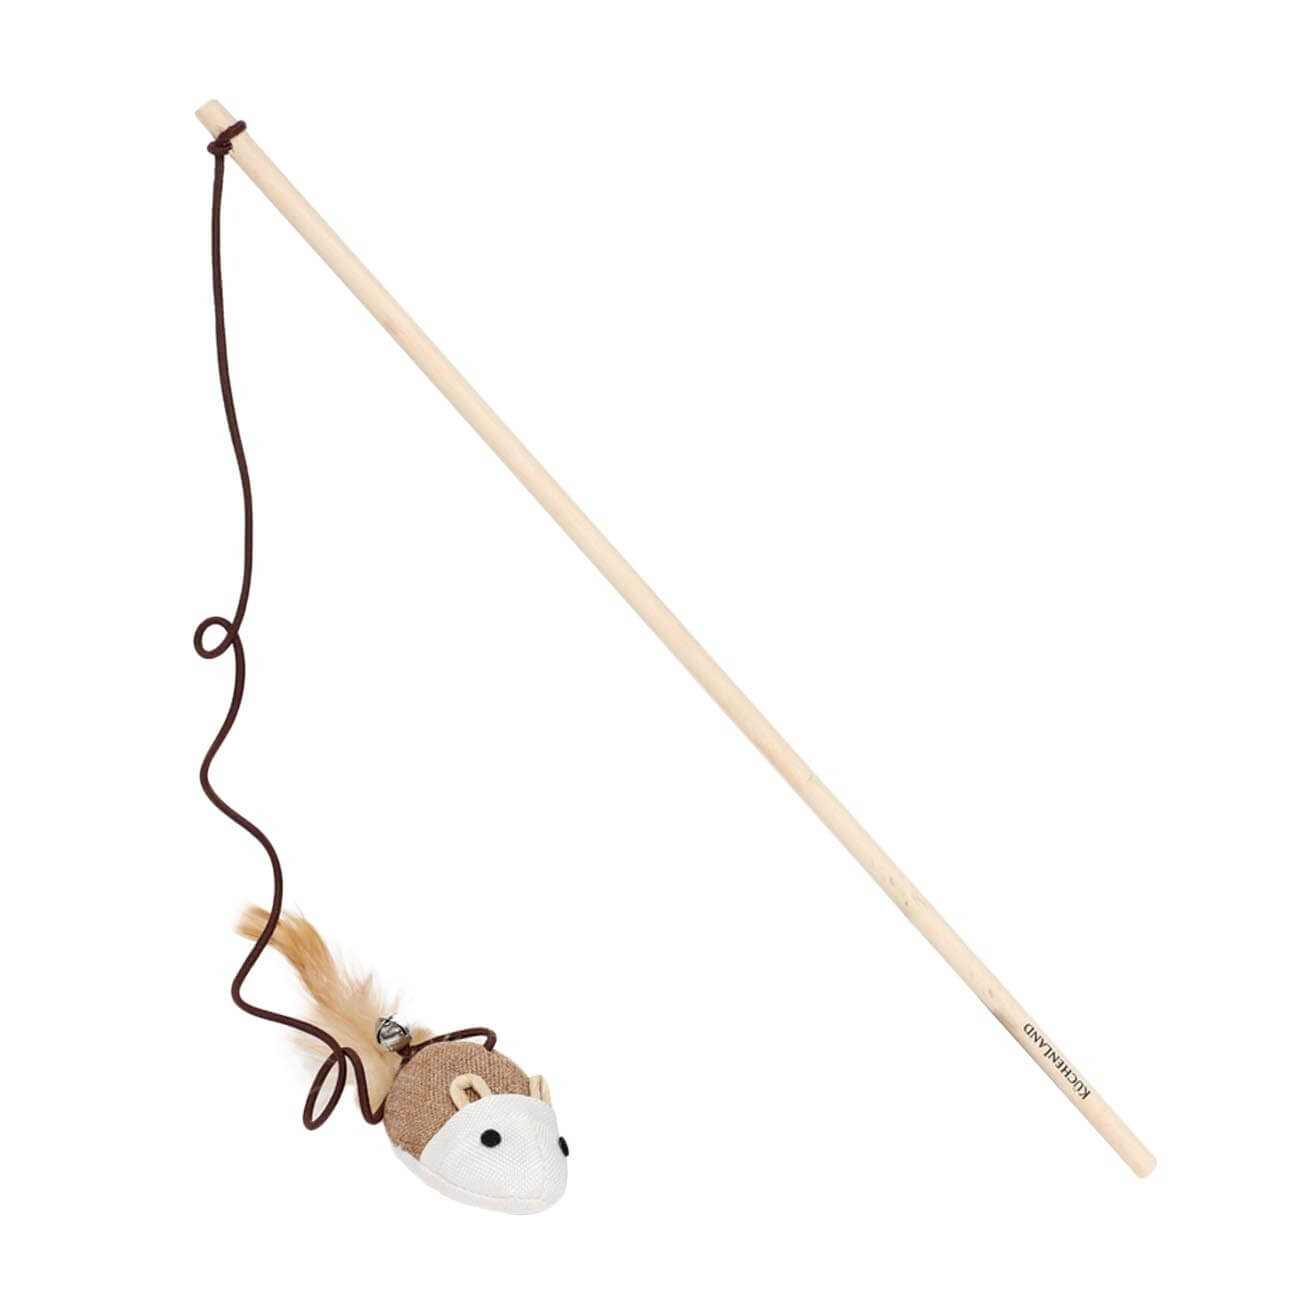 Игрушка-удочка для кошек, 1,1 м, с колокольчиком, дерево/полиэстер, Мышь, Playful cat изображение № 1